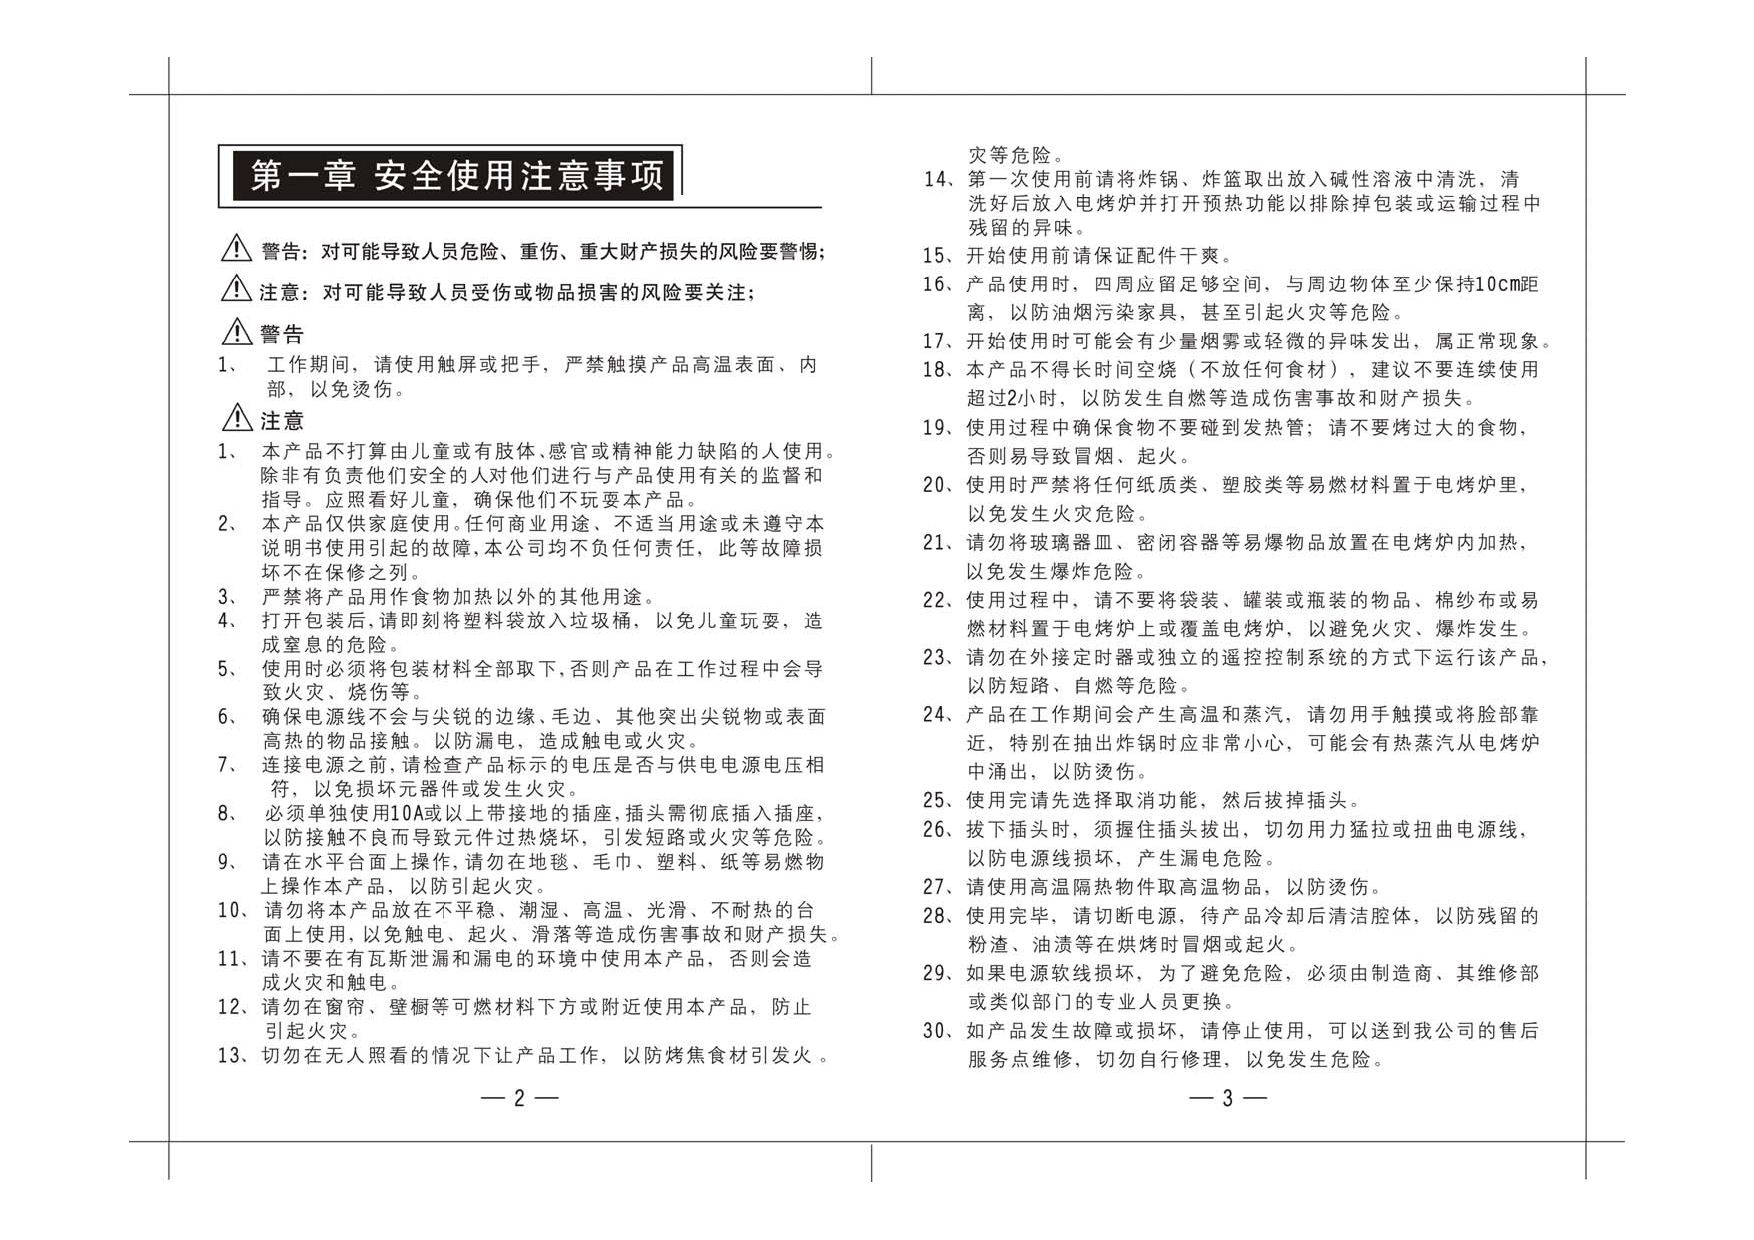 九阳 Joyyoung KL-28Y02 使用说明书 第2页